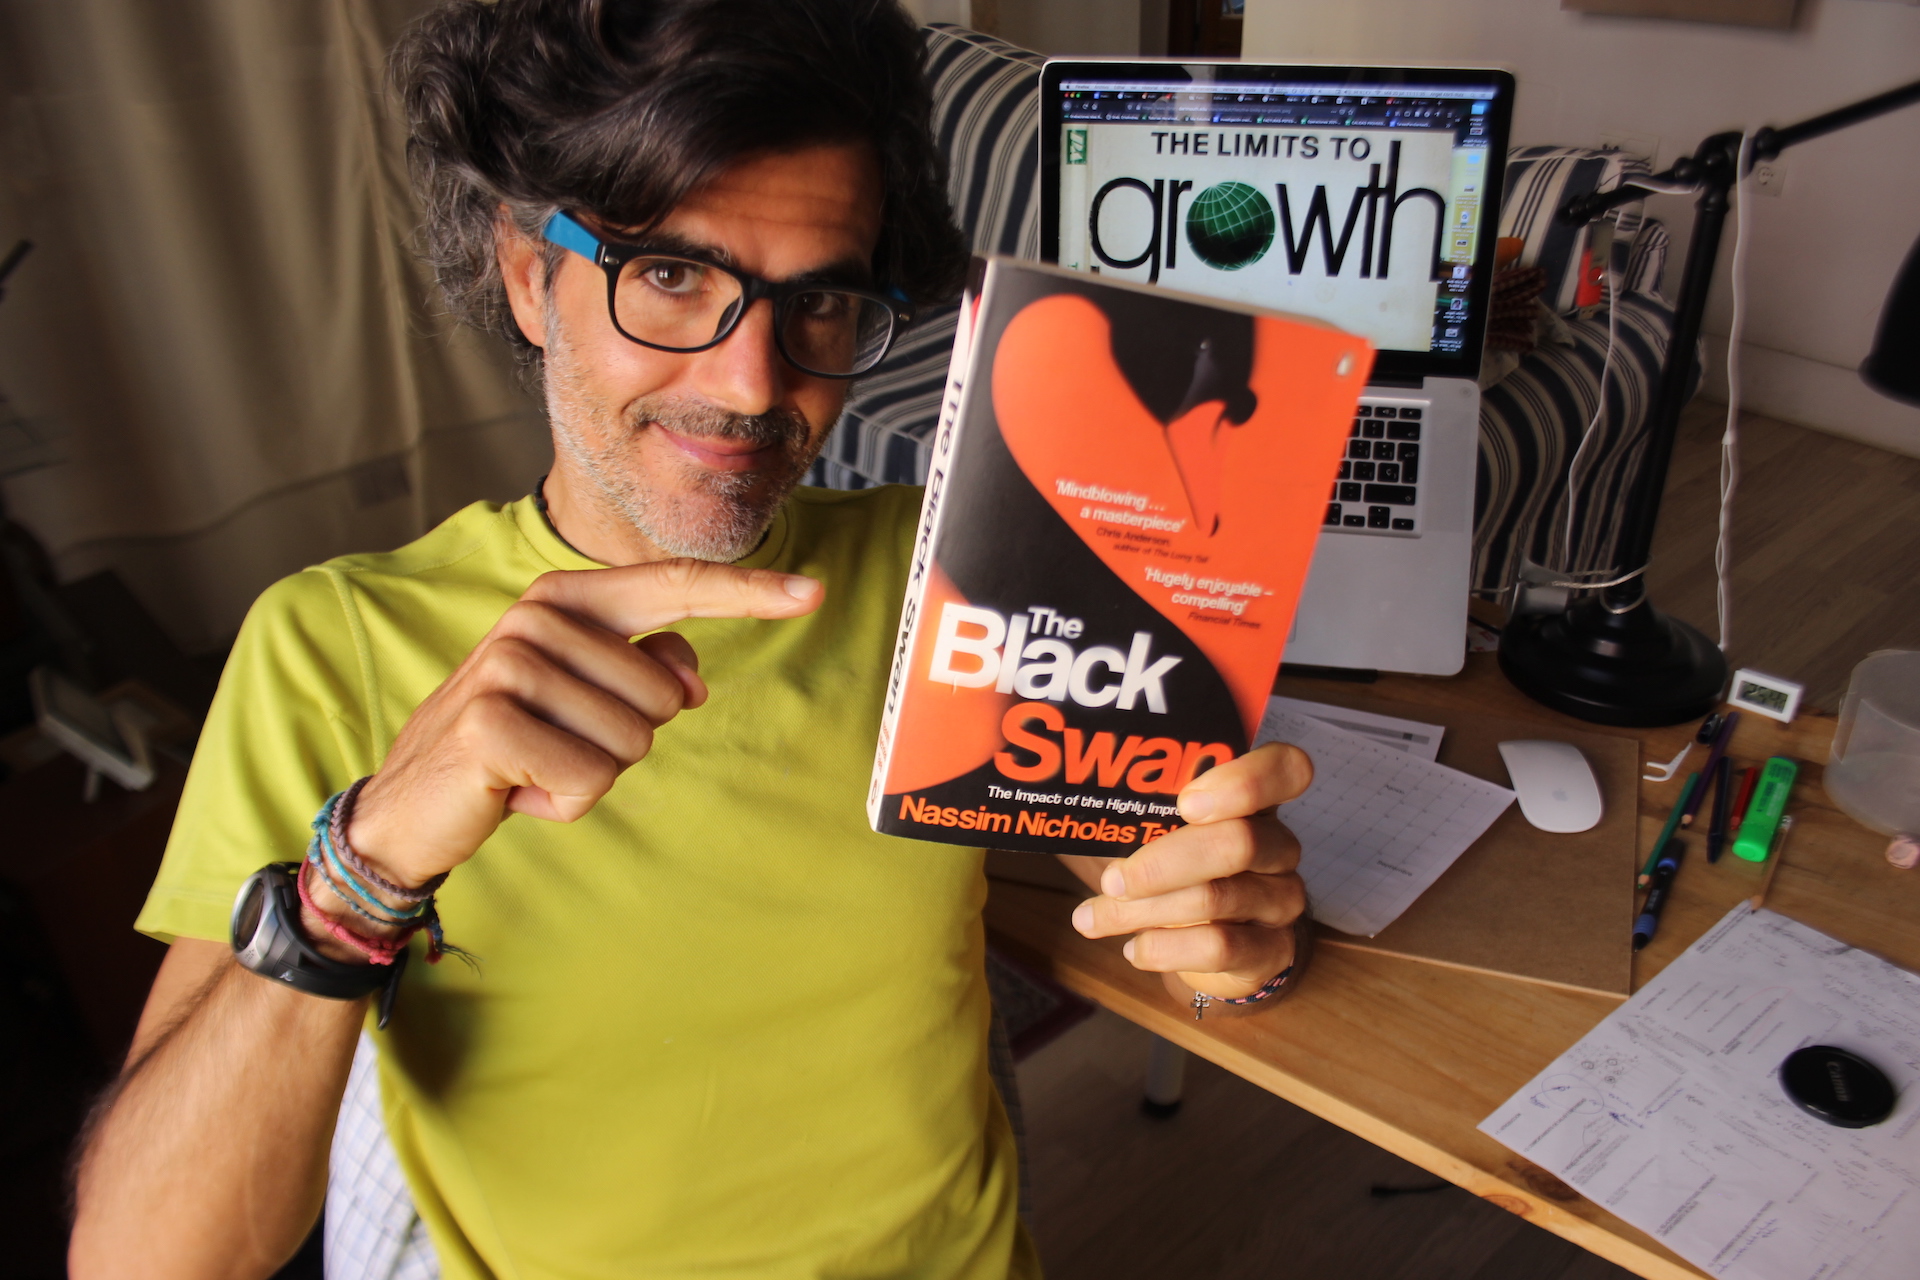 Angel Abril Ruiz con el libro «The Black Swan» en la mano y la imagen del libro «The Limits To Growth» en el ordenador de fondo